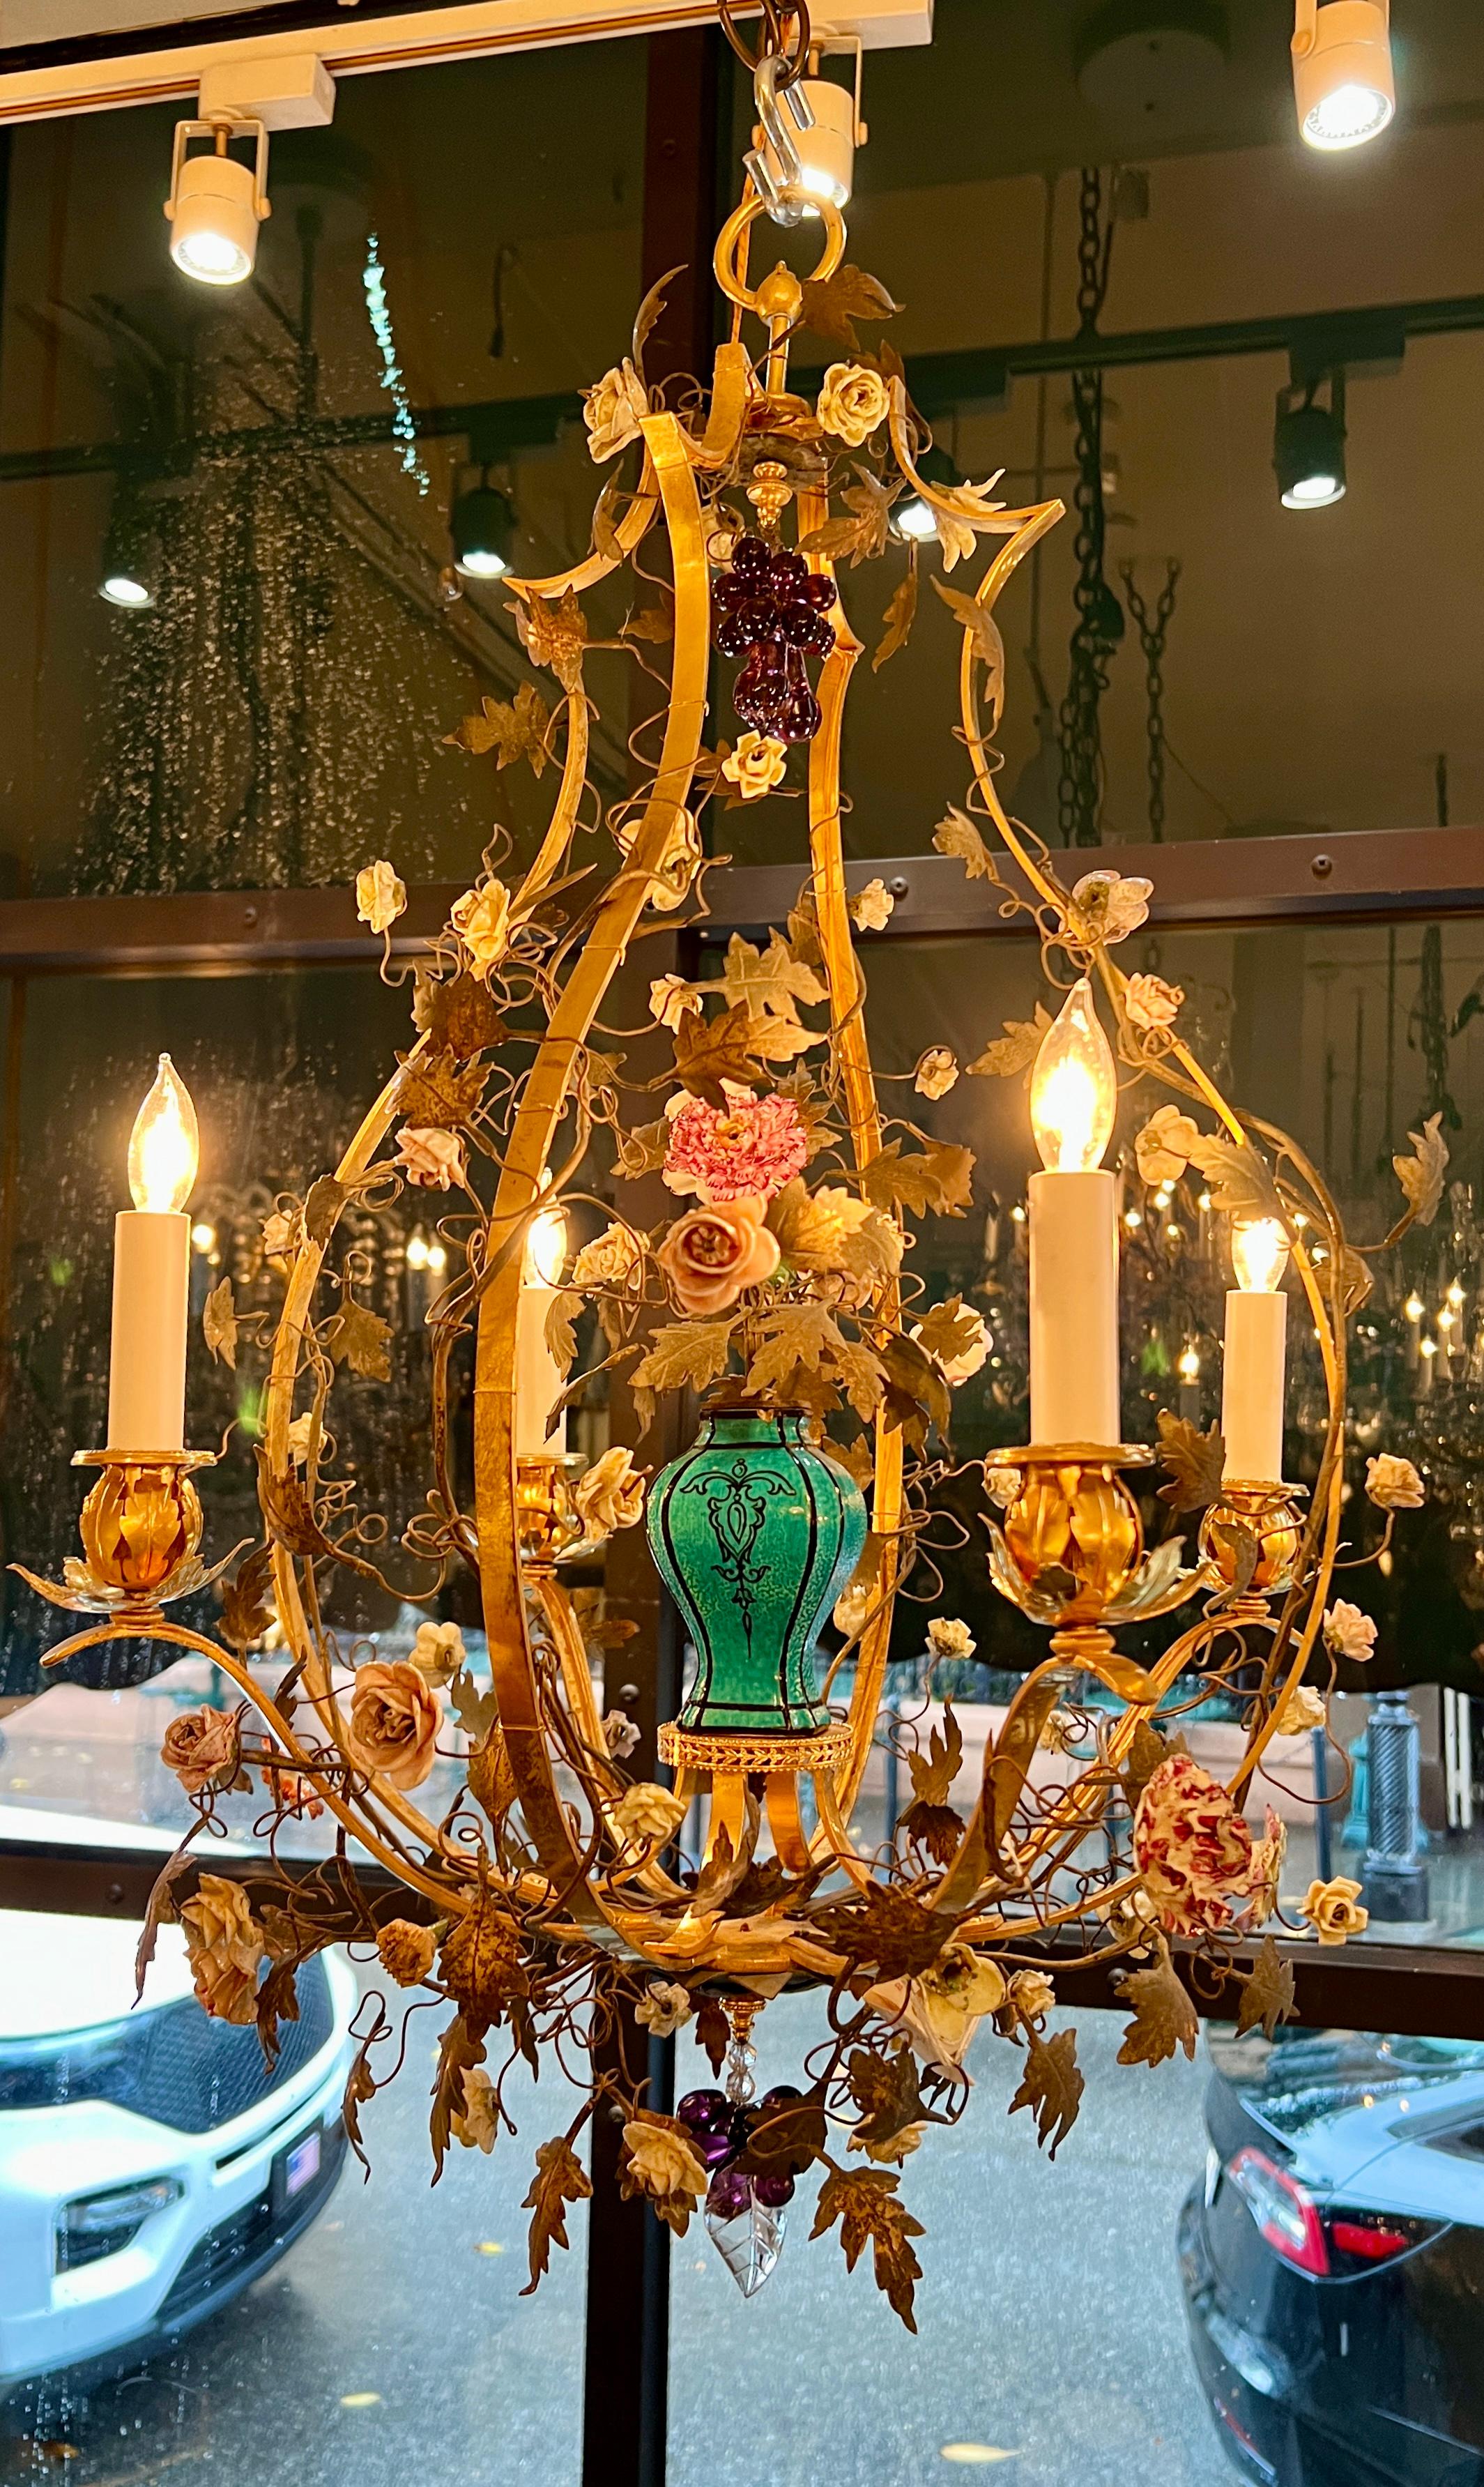 Antiker französischer Kronleuchter aus Zinn und „Saxe“-Porzellan mit Blumen aus dem 19. Jahrhundert.
Hübsche Porzellanblumen in verschiedenen Farben mit einer tealfarbenen Porzellanvase